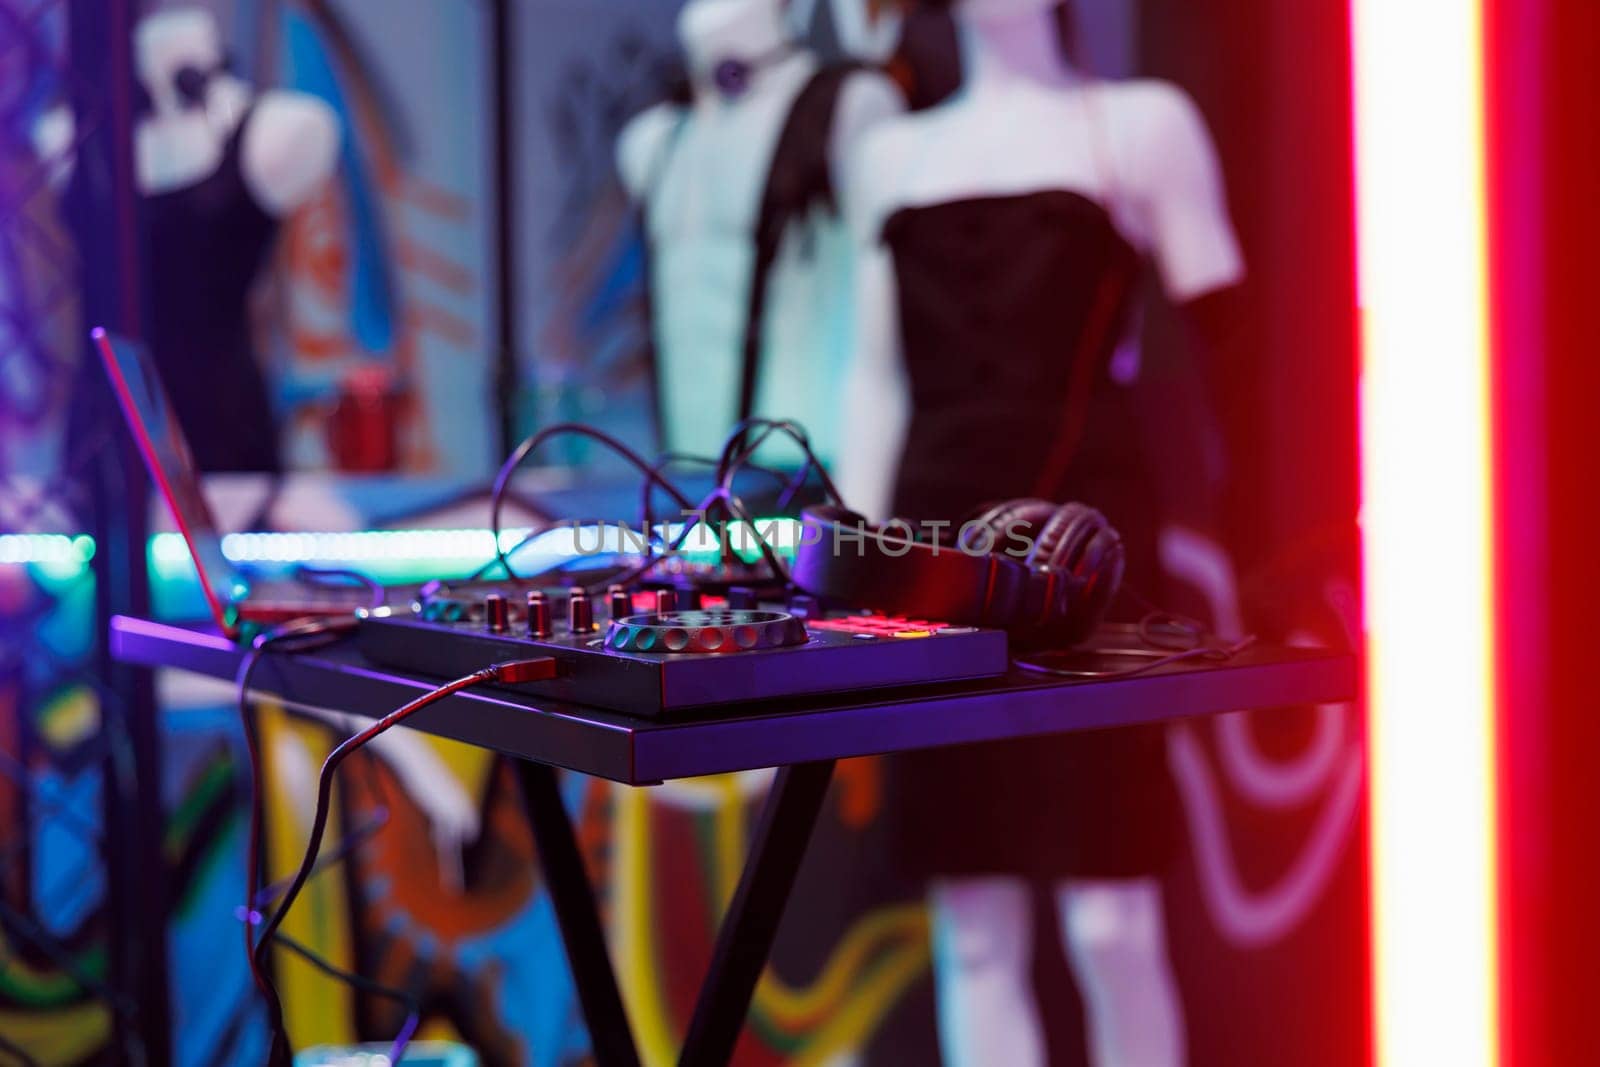 Dj music mixer equipment in nightclub by DCStudio